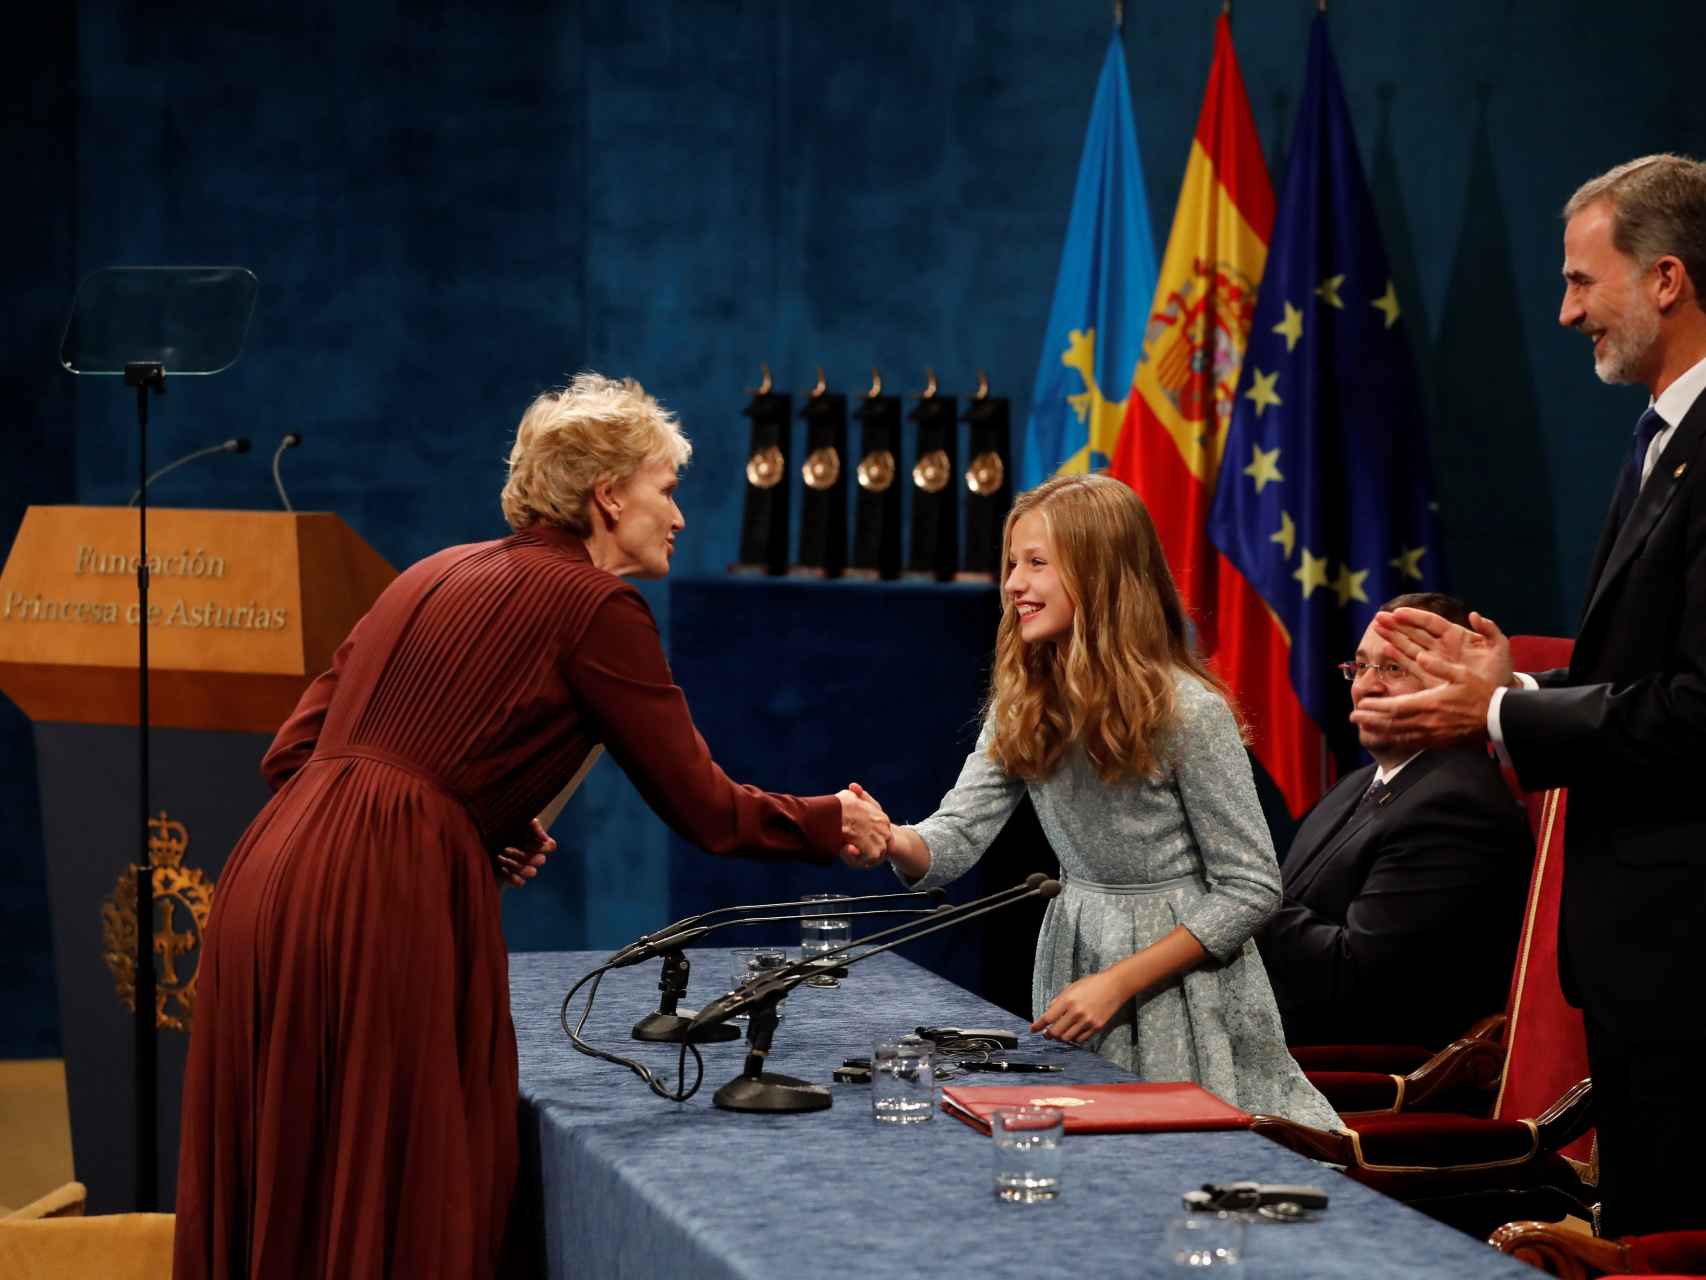 Los galardonados con el Premio Princesa de Asturias 2019, en imágenes